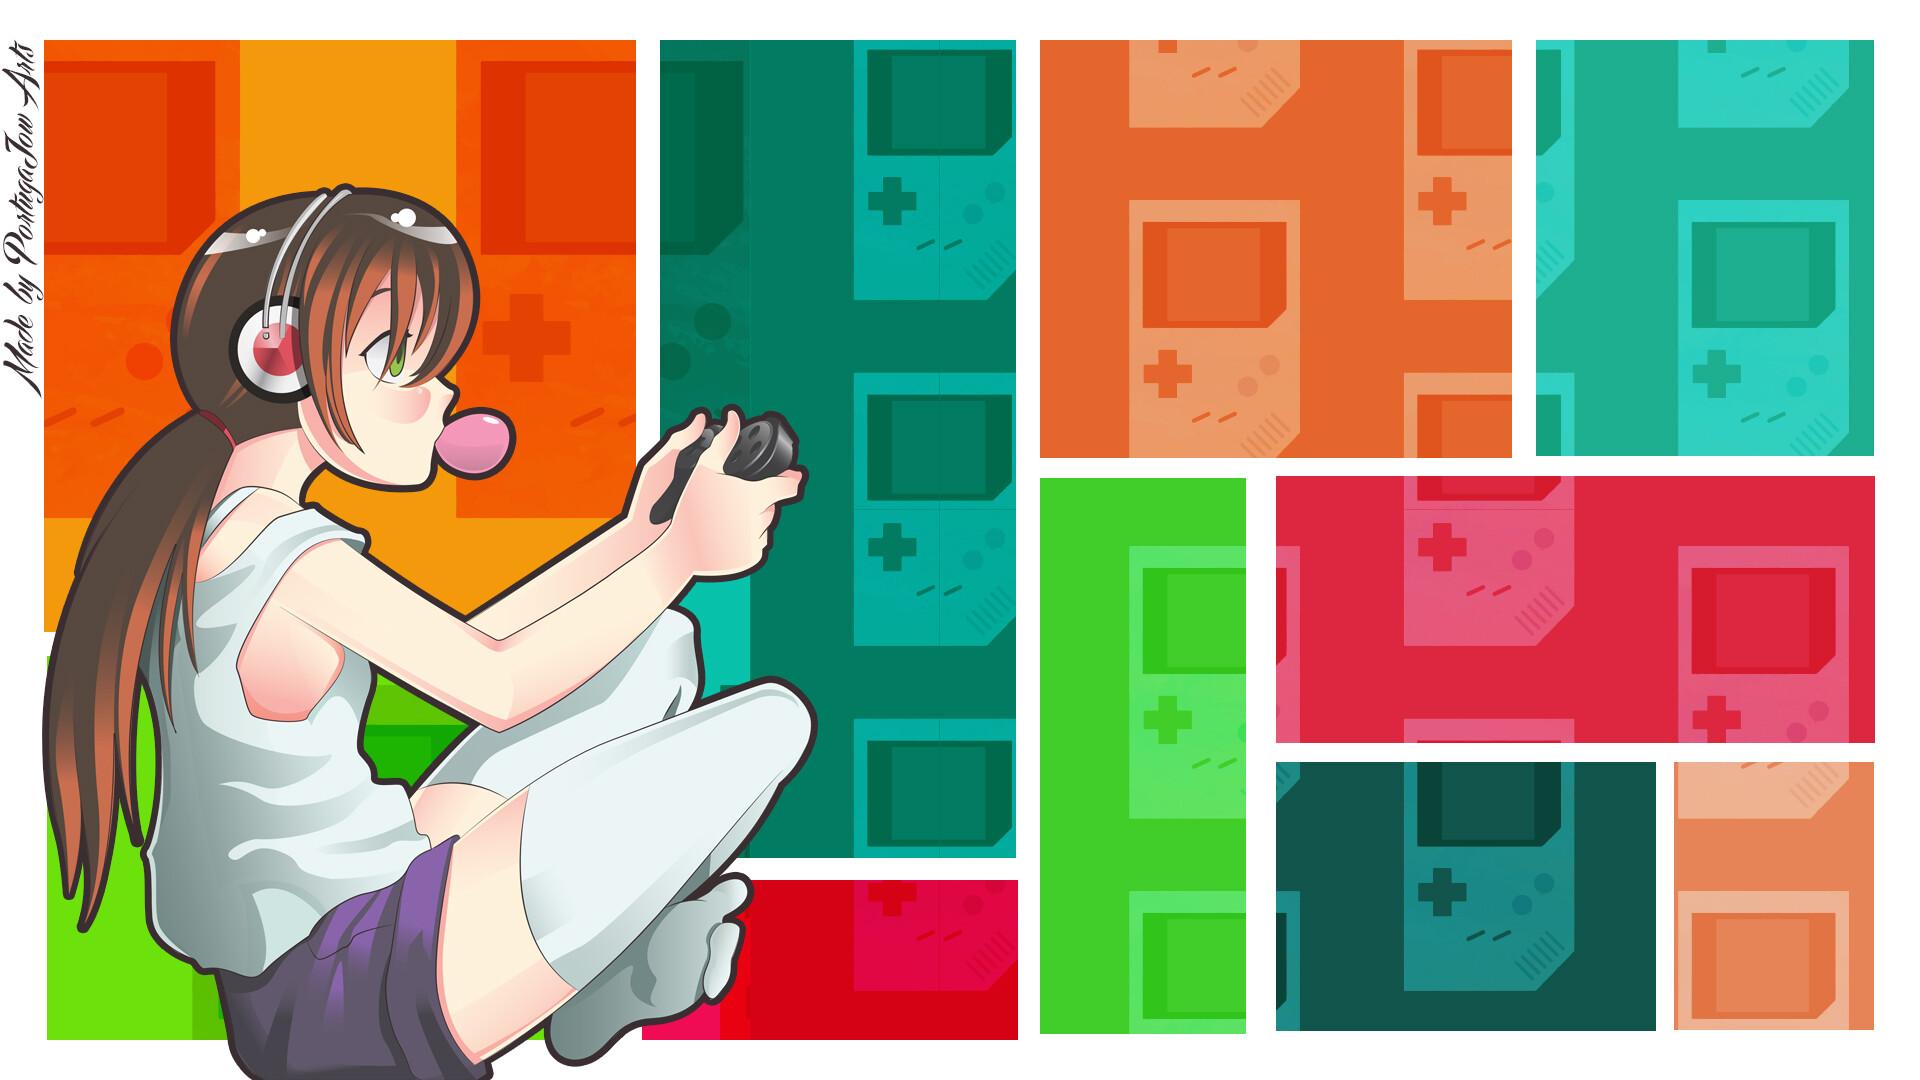 Anime gamer girl Vector wallpaper, Alexis Portugal